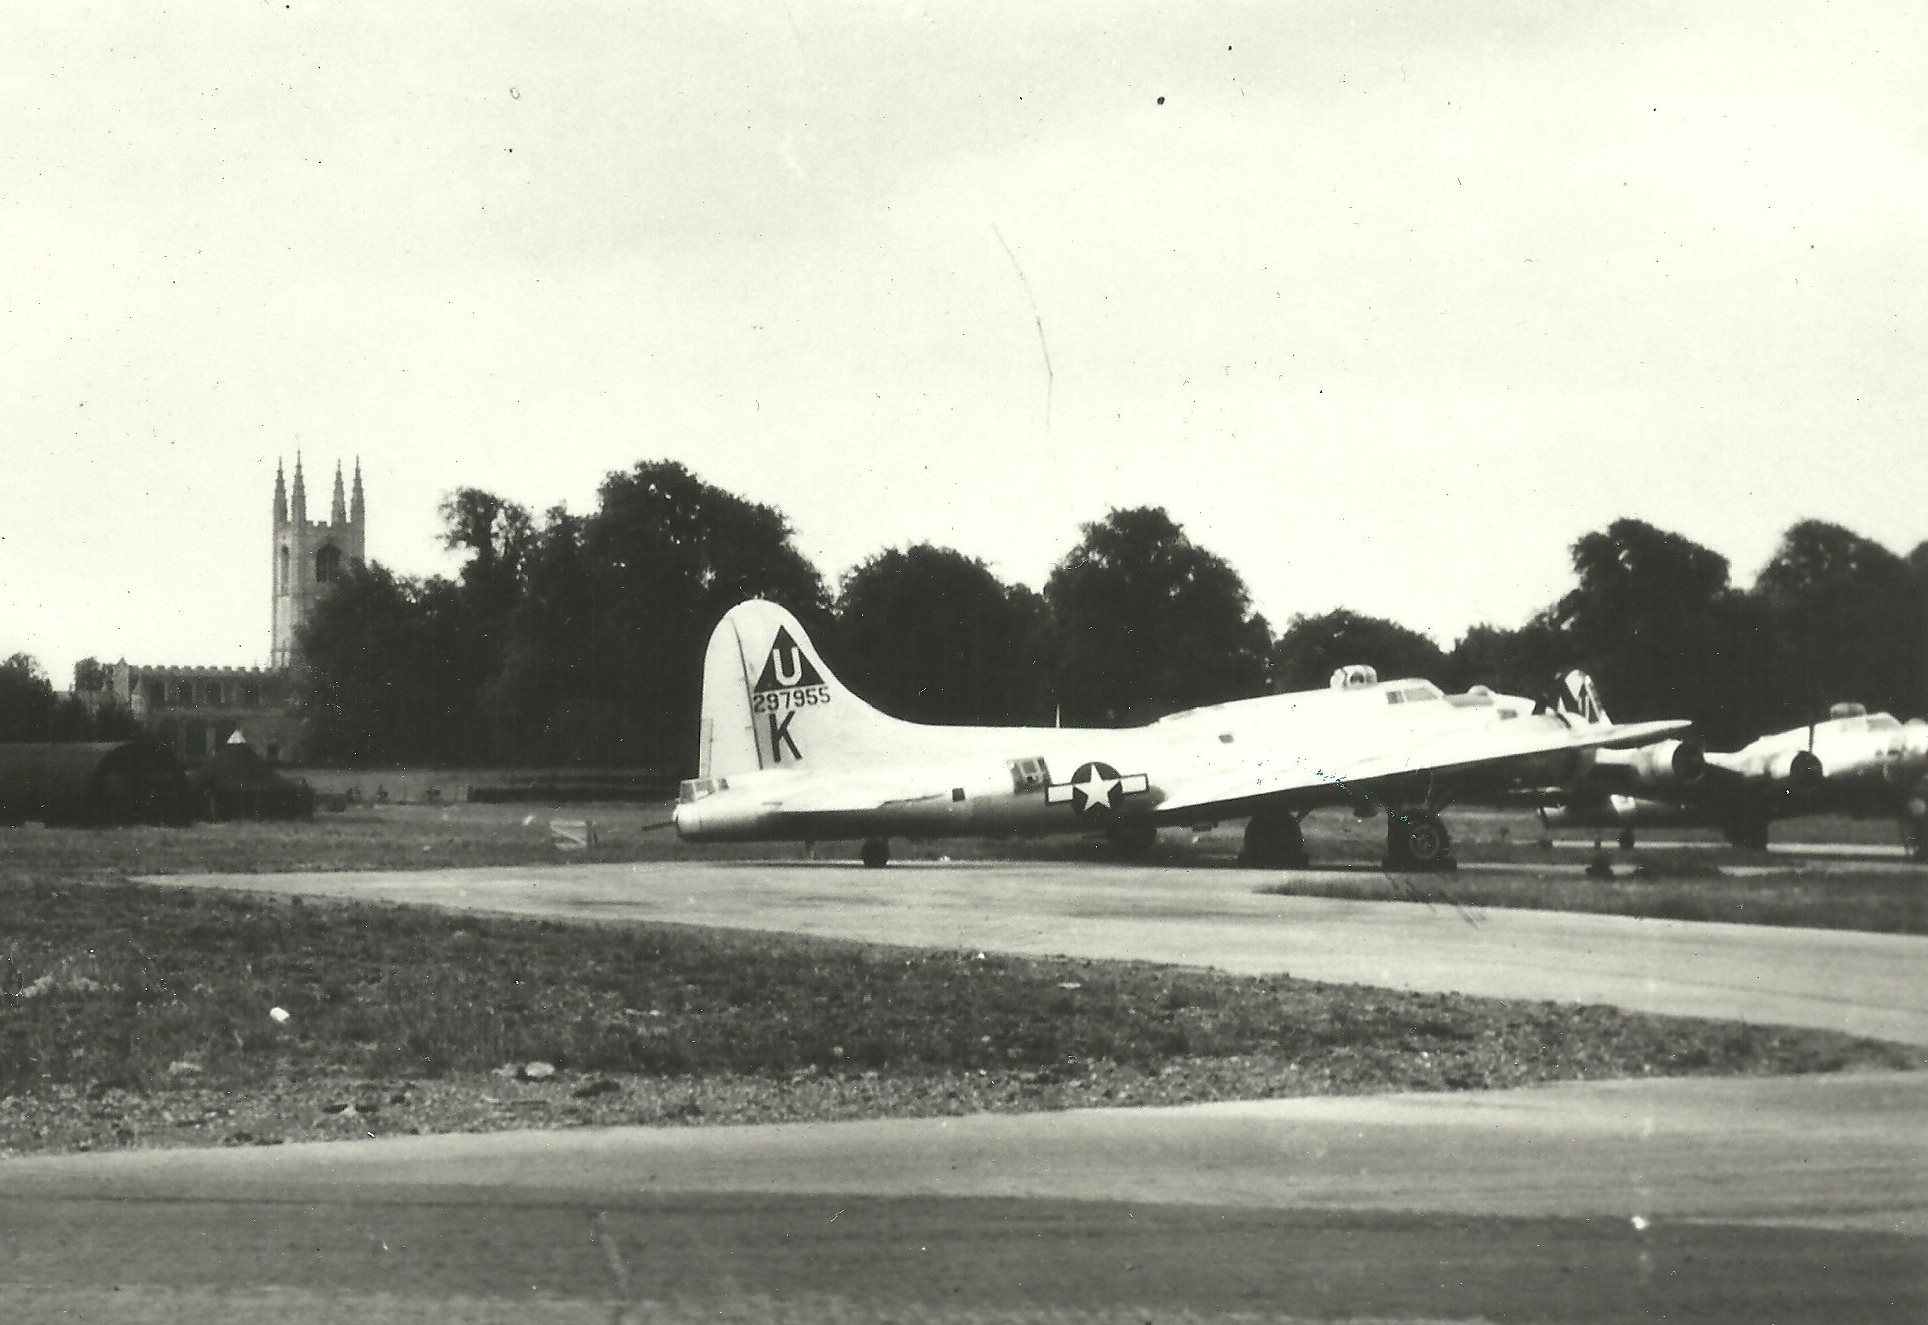 B-17 #42-97955